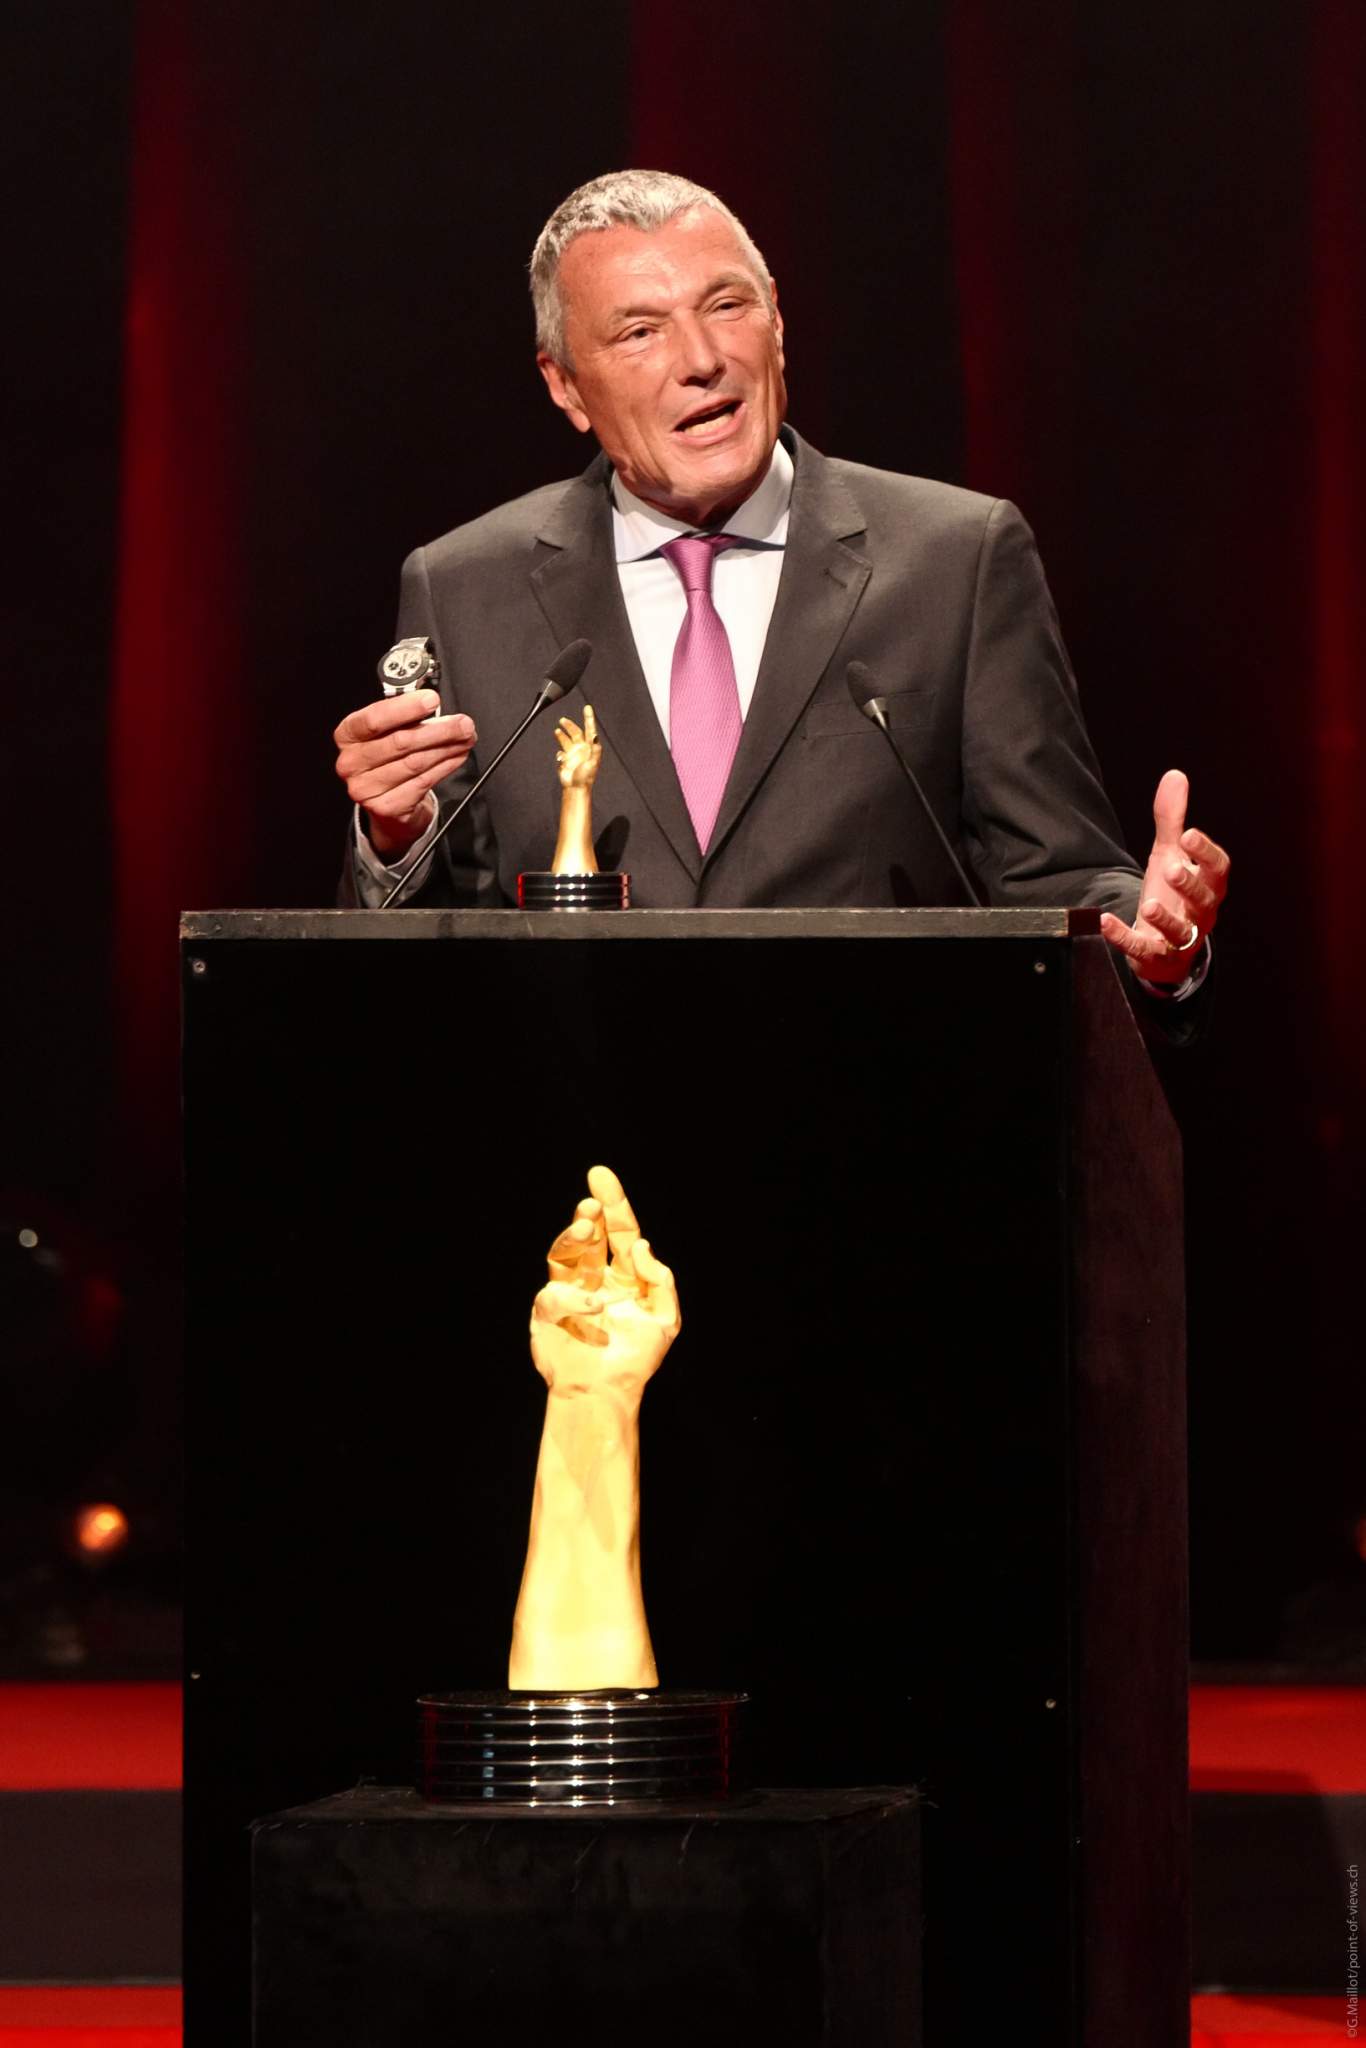 Jean-Christophe Babin, CEO de Bulgari, lauréat du Prix de la Montre Iconique 2020